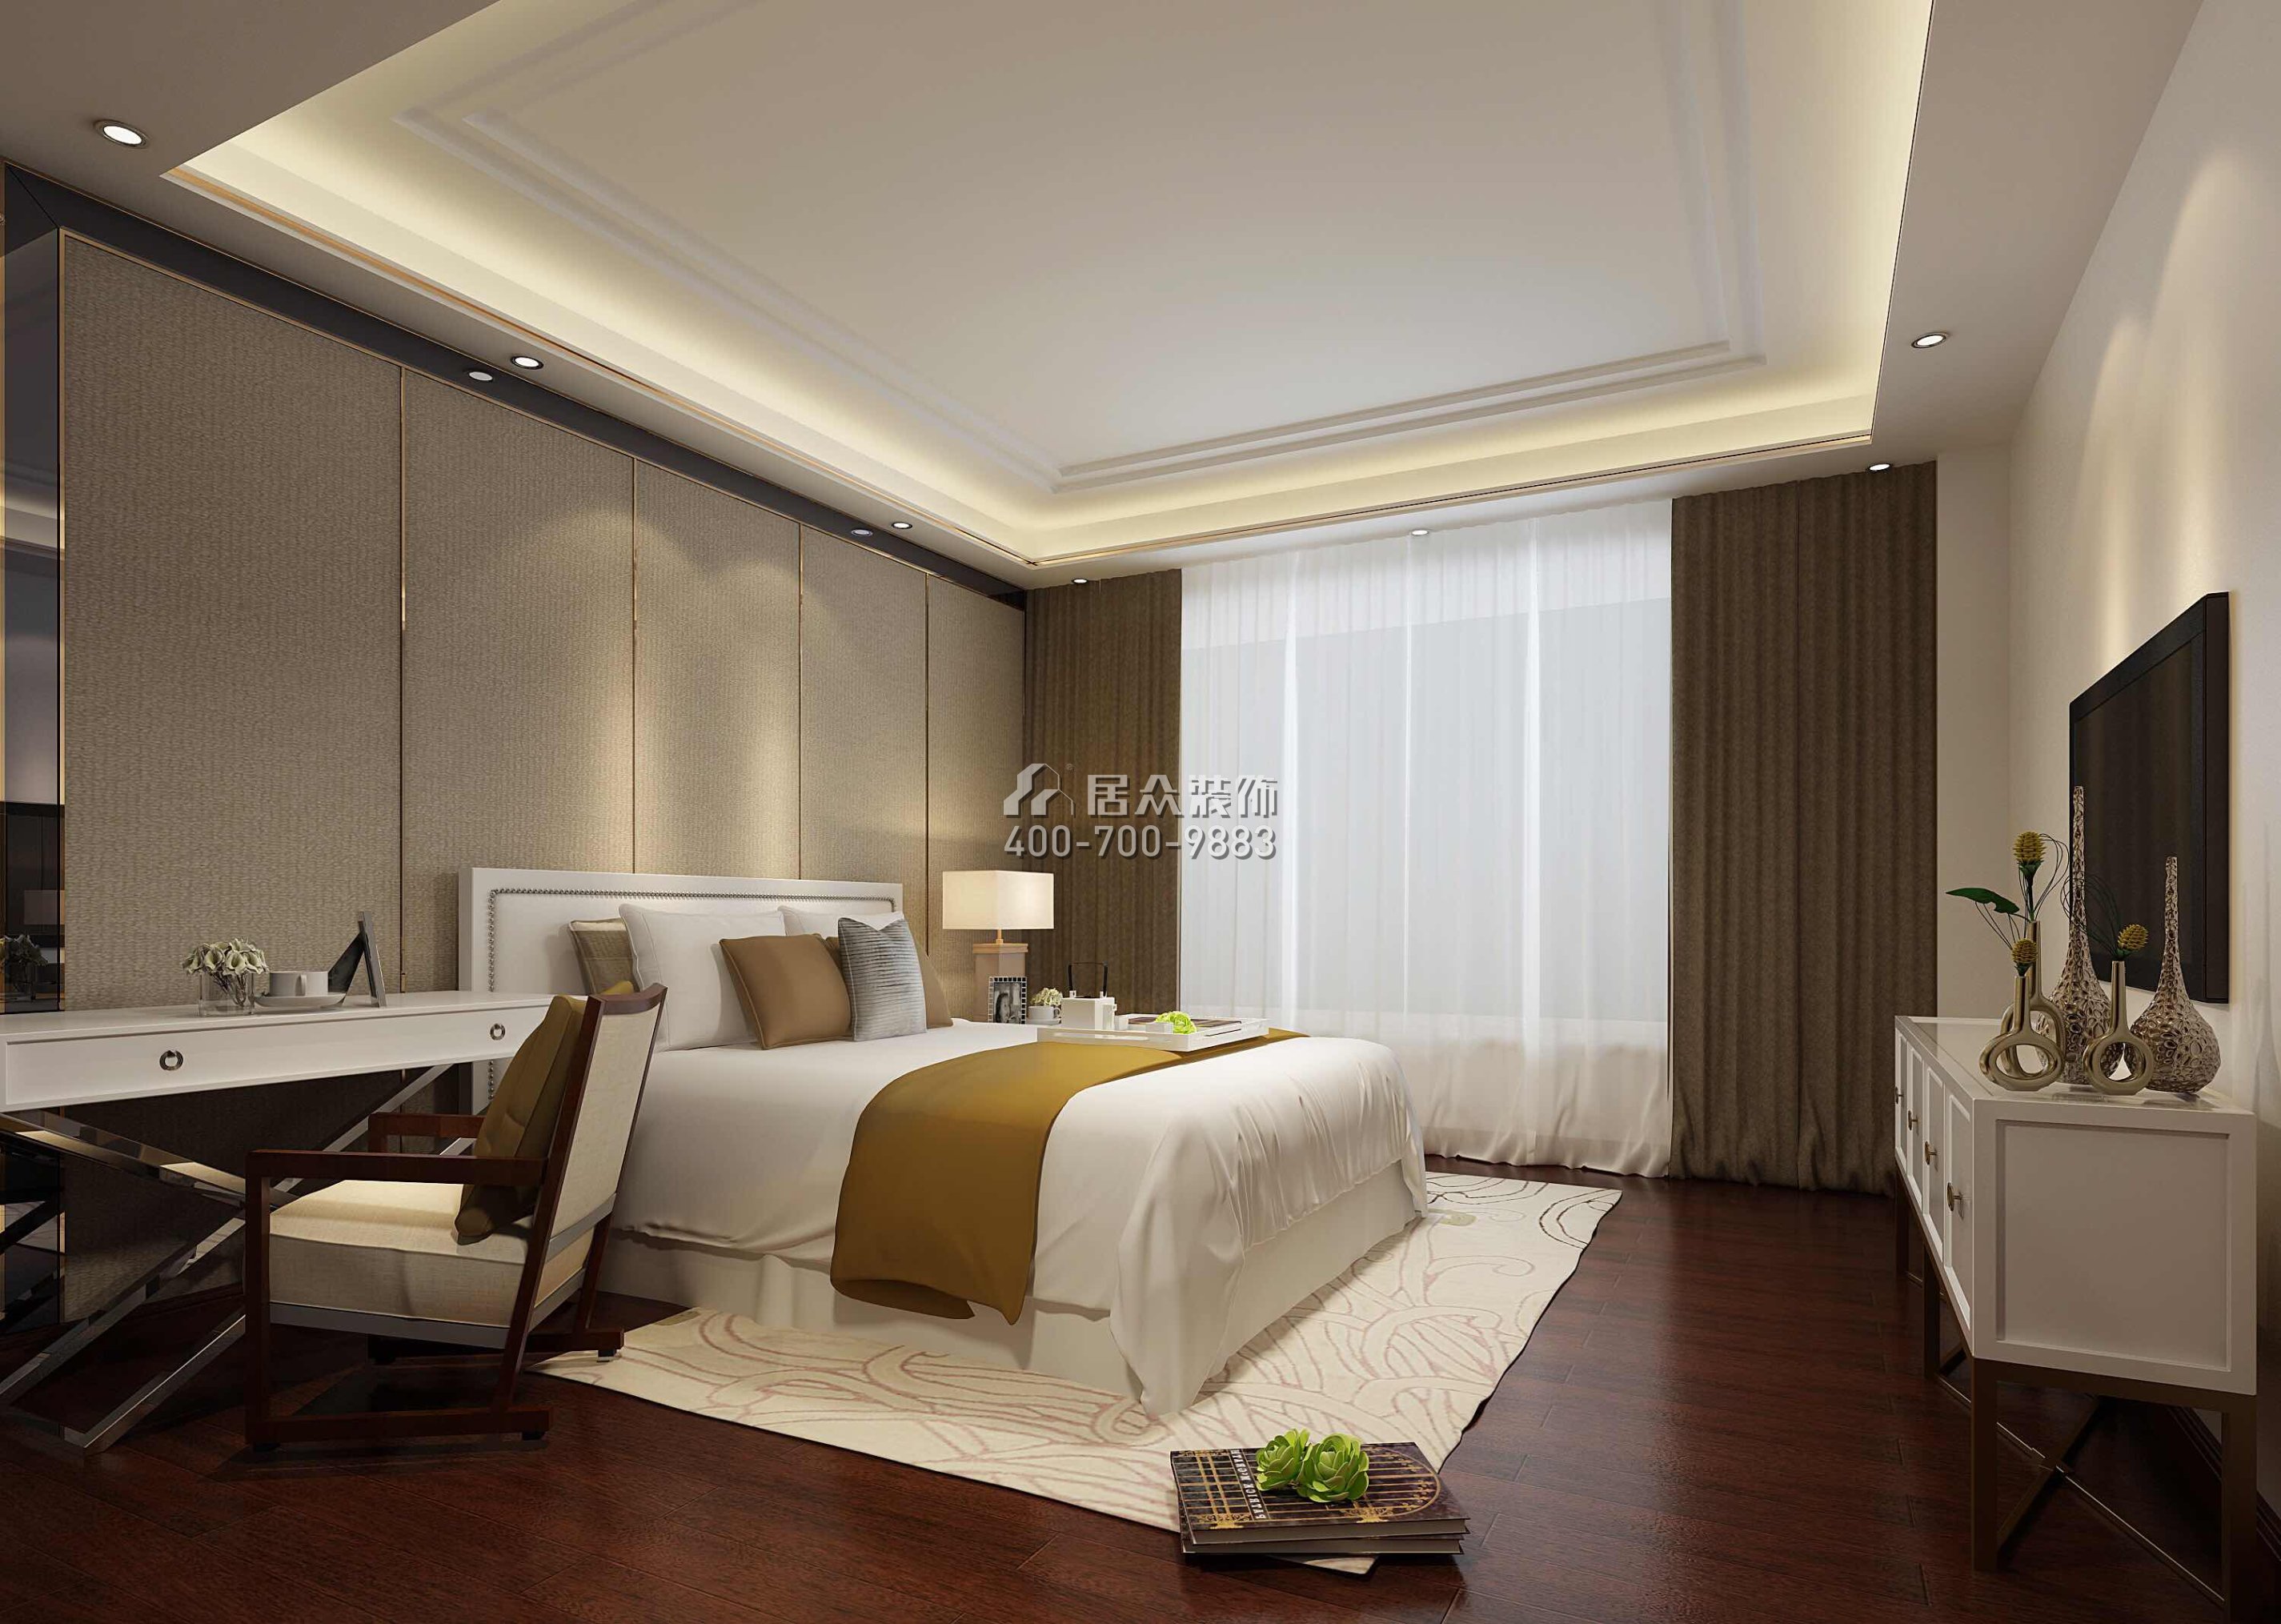 纯水岸255平方米中式风格平层户型卧室装修效果图